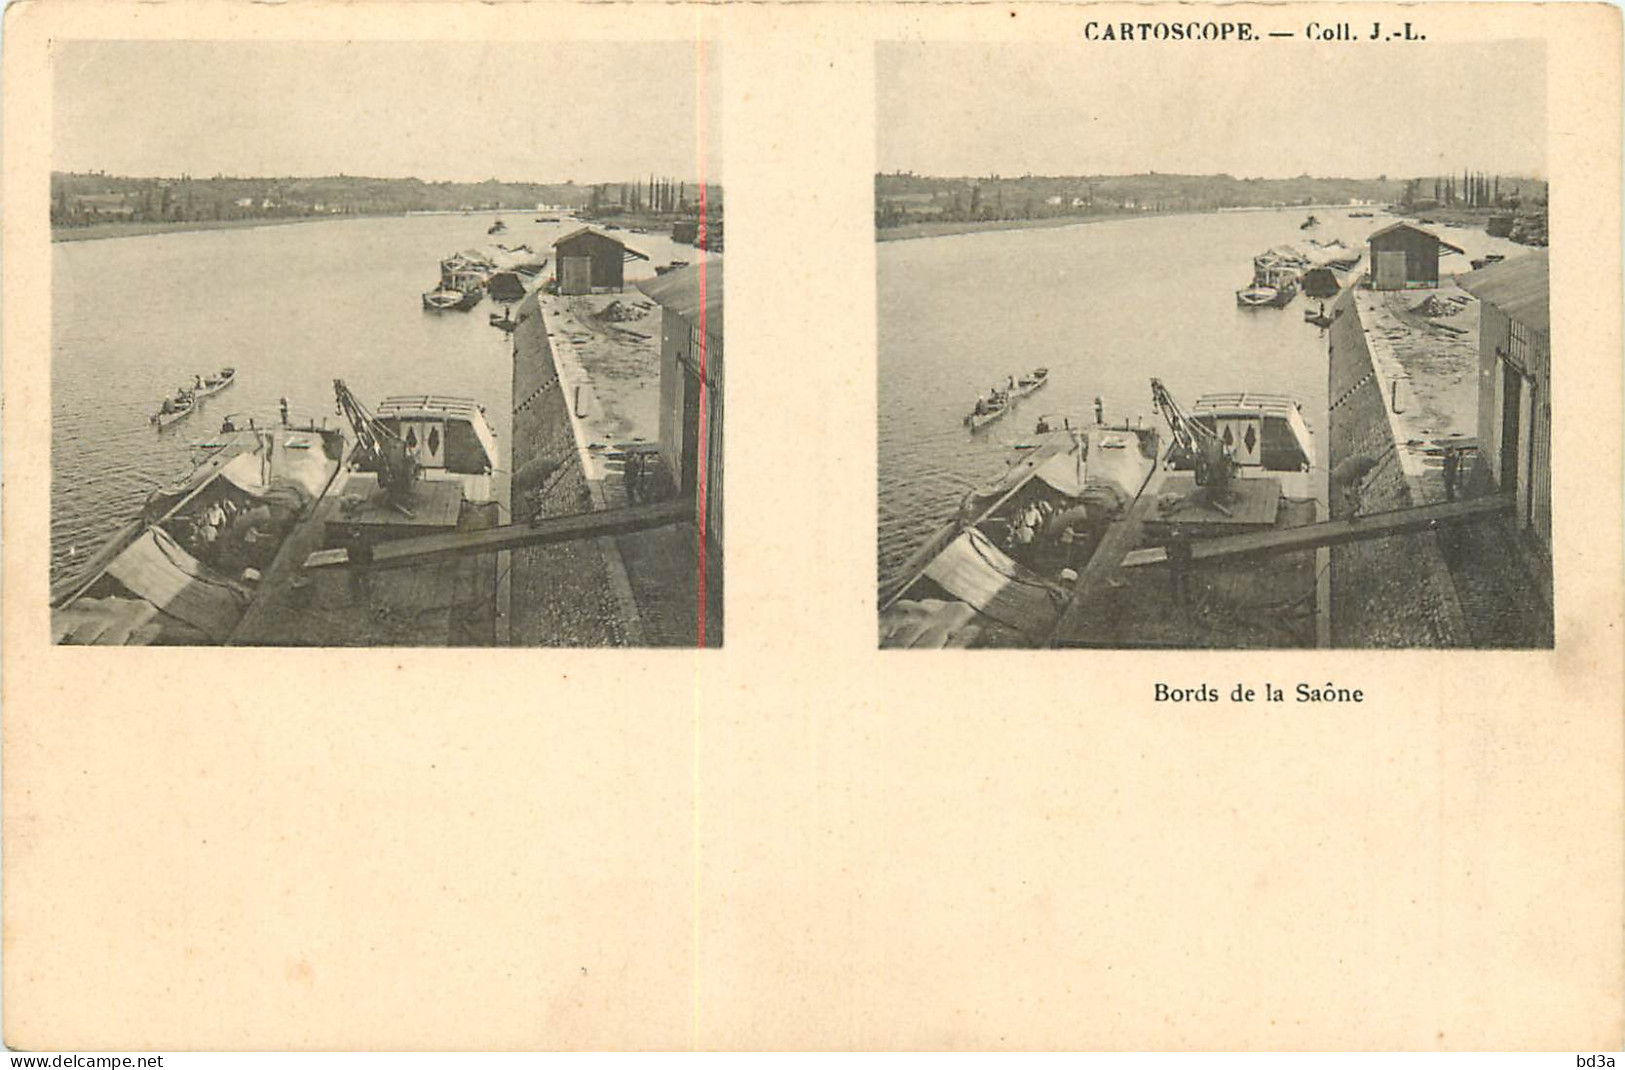 CARTE STEREOSCOPIQUE - BORDS DE LA SAONE - CARTOSCOPE - COLL J.L. - Stereoscope Cards